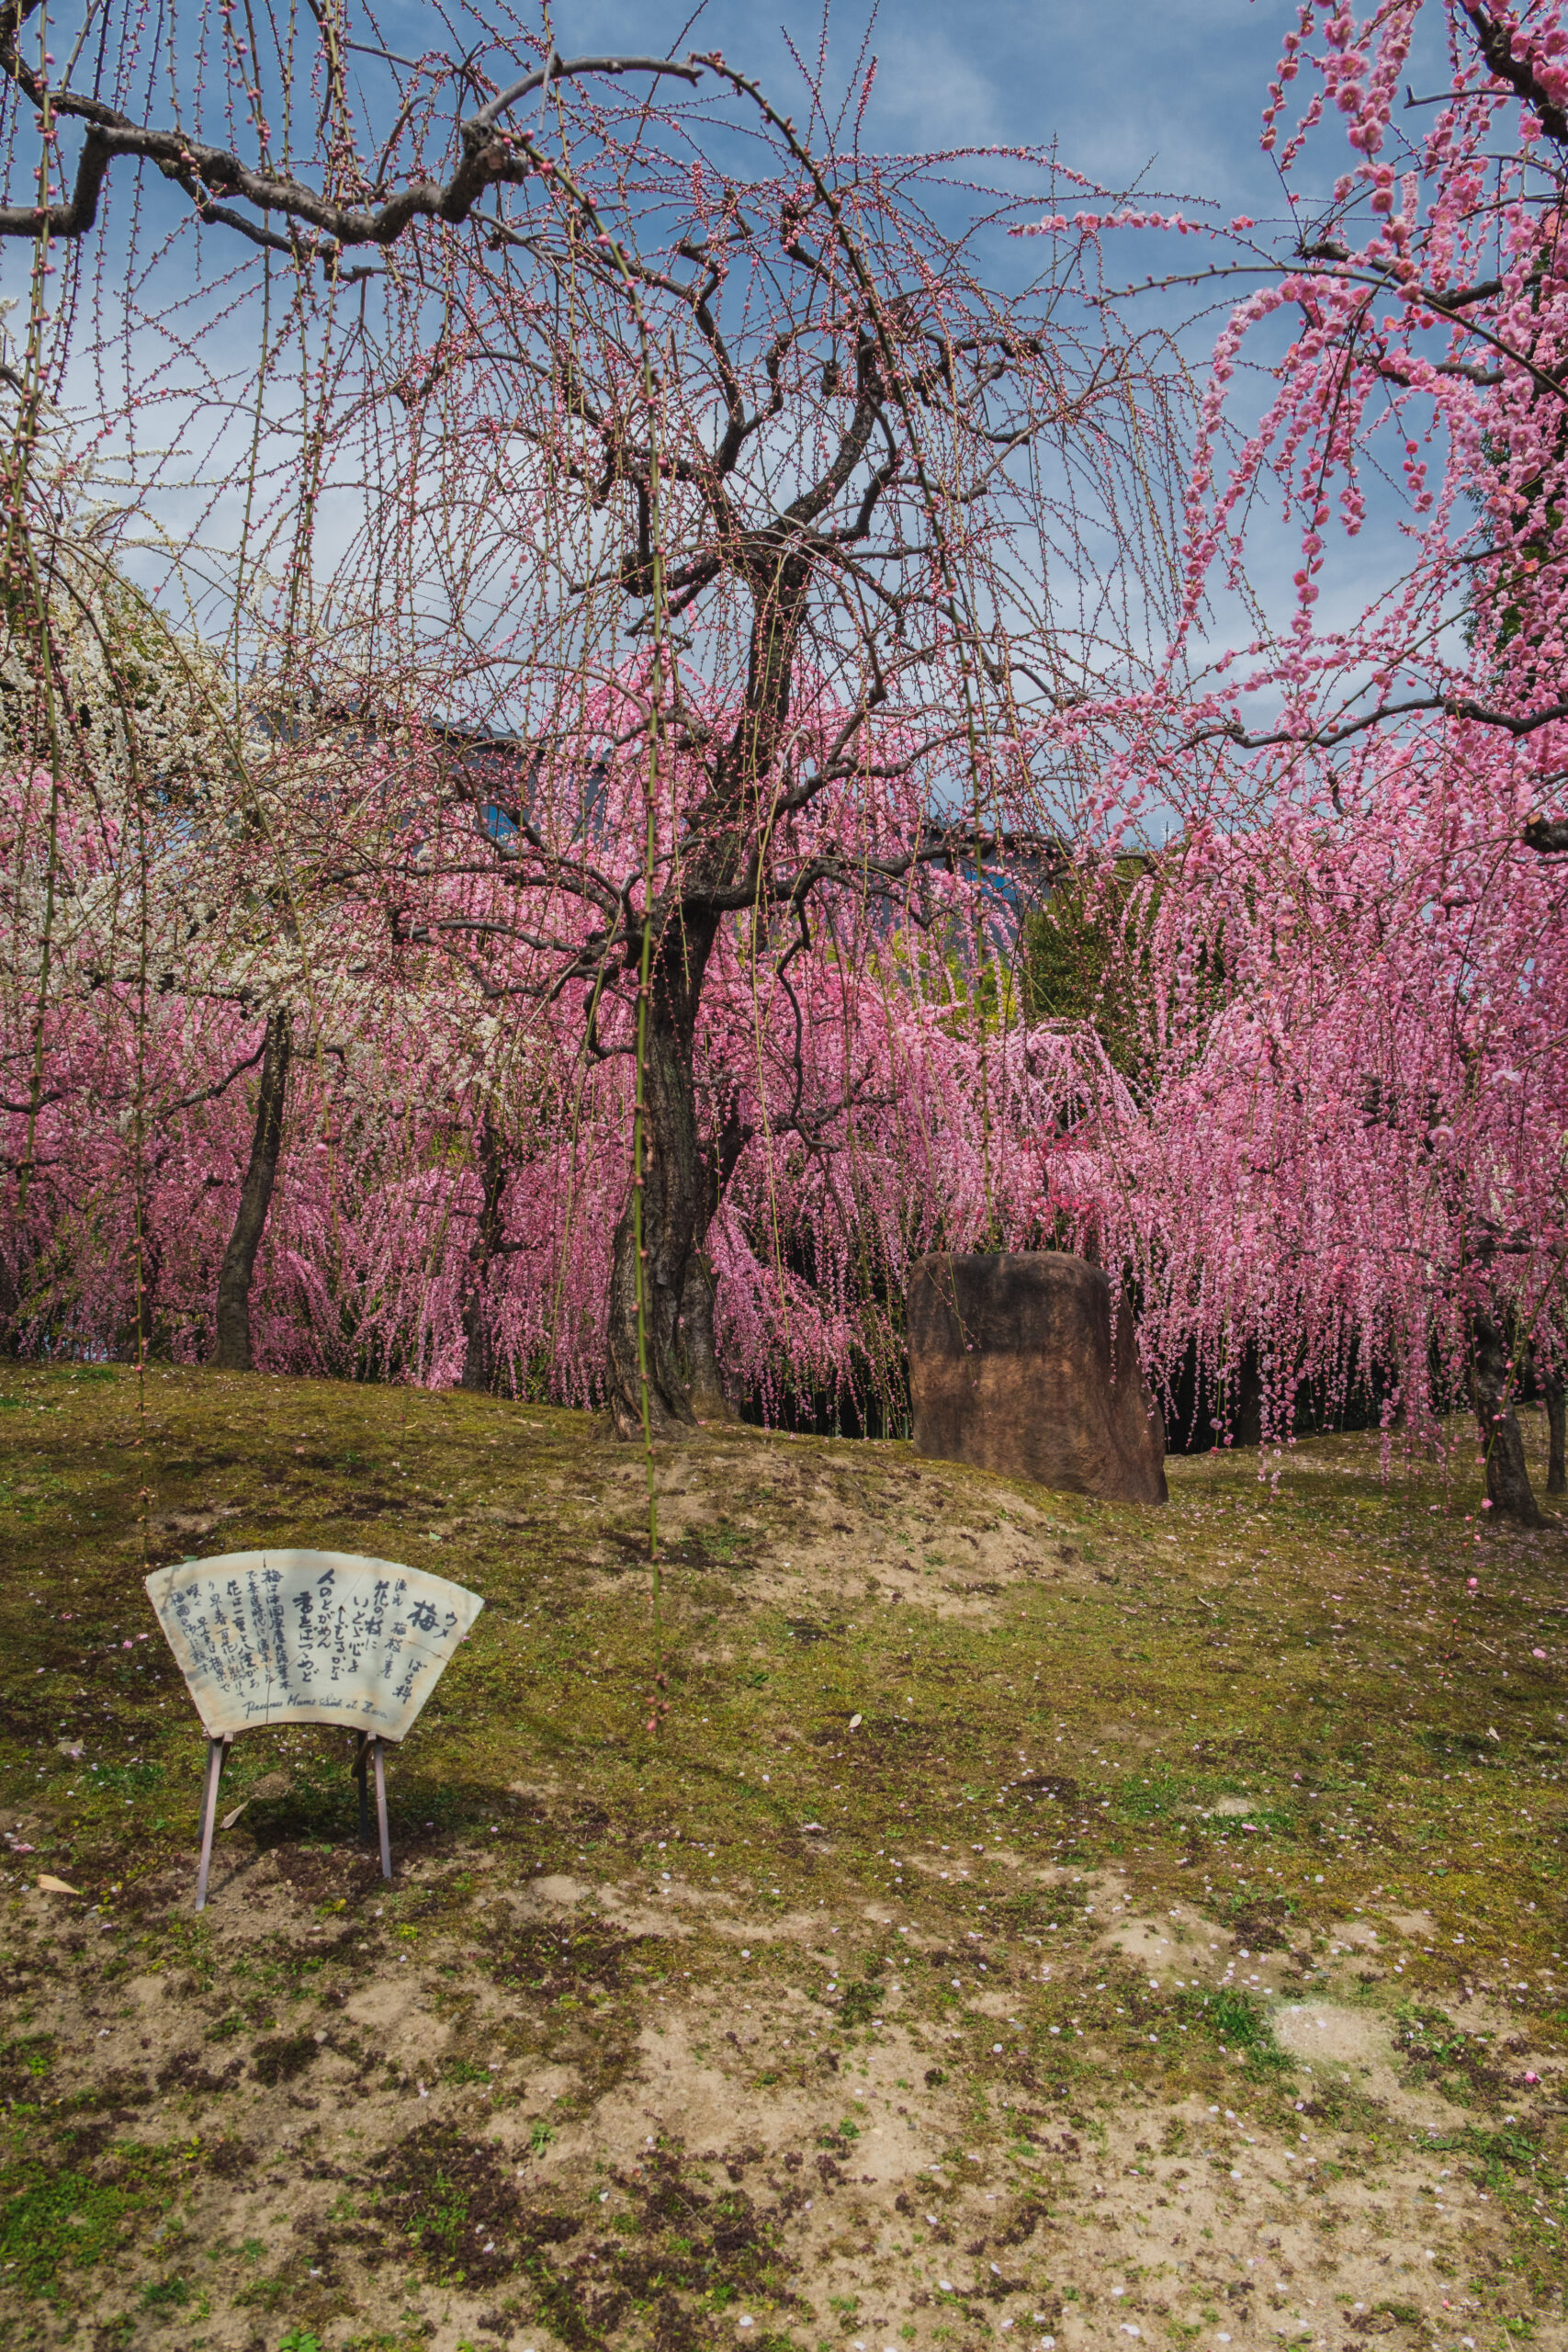 DSCF0882-scaled 京都 城南宮(庭園に咲く150本の枝垂梅が絶景の写真スポット! 撮影した写真の紹介、アクセス情報や交通手段・駐車場情報などまとめ)